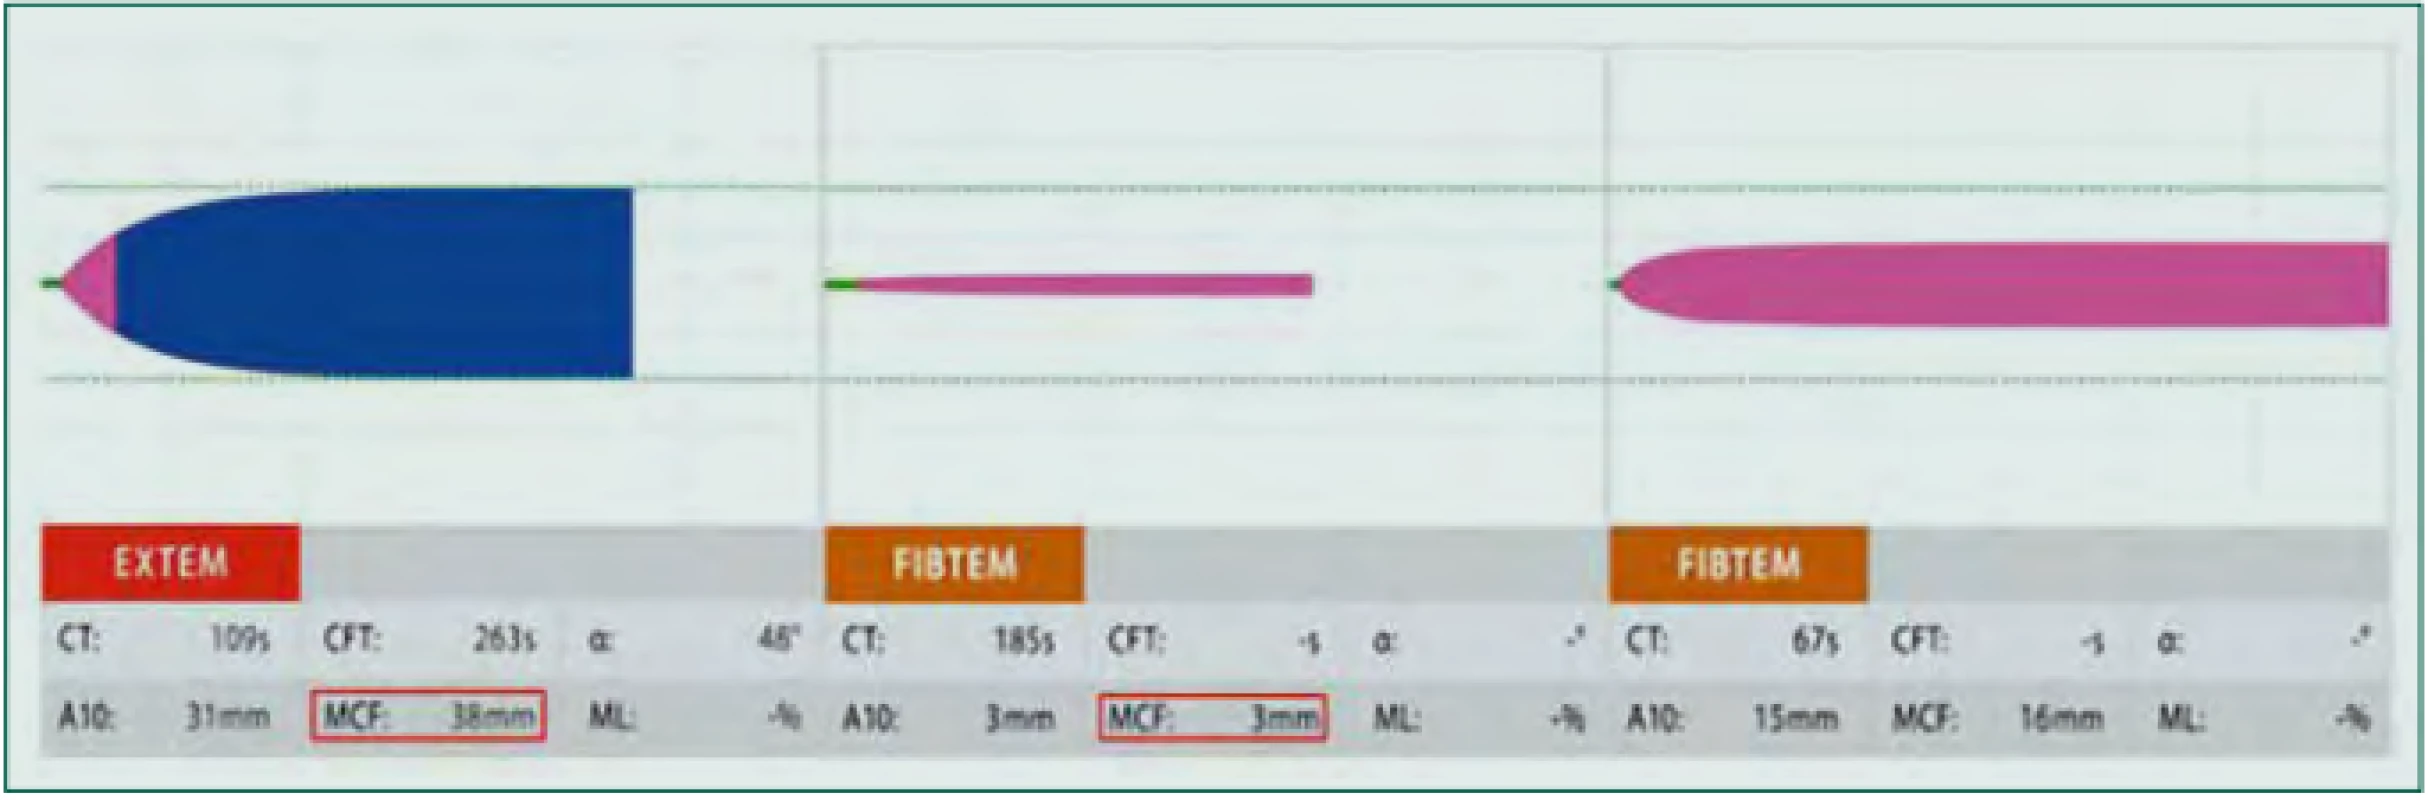 Deficit fibrinogenu a trombocytů: Vlevo patologická křivka vyšetření EXTEM se snížením parametru MCFEXTEM (červený rámeček, normální hodnoty
50–72 mm), které může značit deficit fibrinogenu či trombocytů. K odlišení je proveden test FIBTEM – snížení parametru MCFFIBTEM (červený rámeček, normální
hodnoty 9–25 mm) představuje deficit funkčního fibrinogenu, normální hodnota tohoto parametru pak deficit funkčních trombocytů.